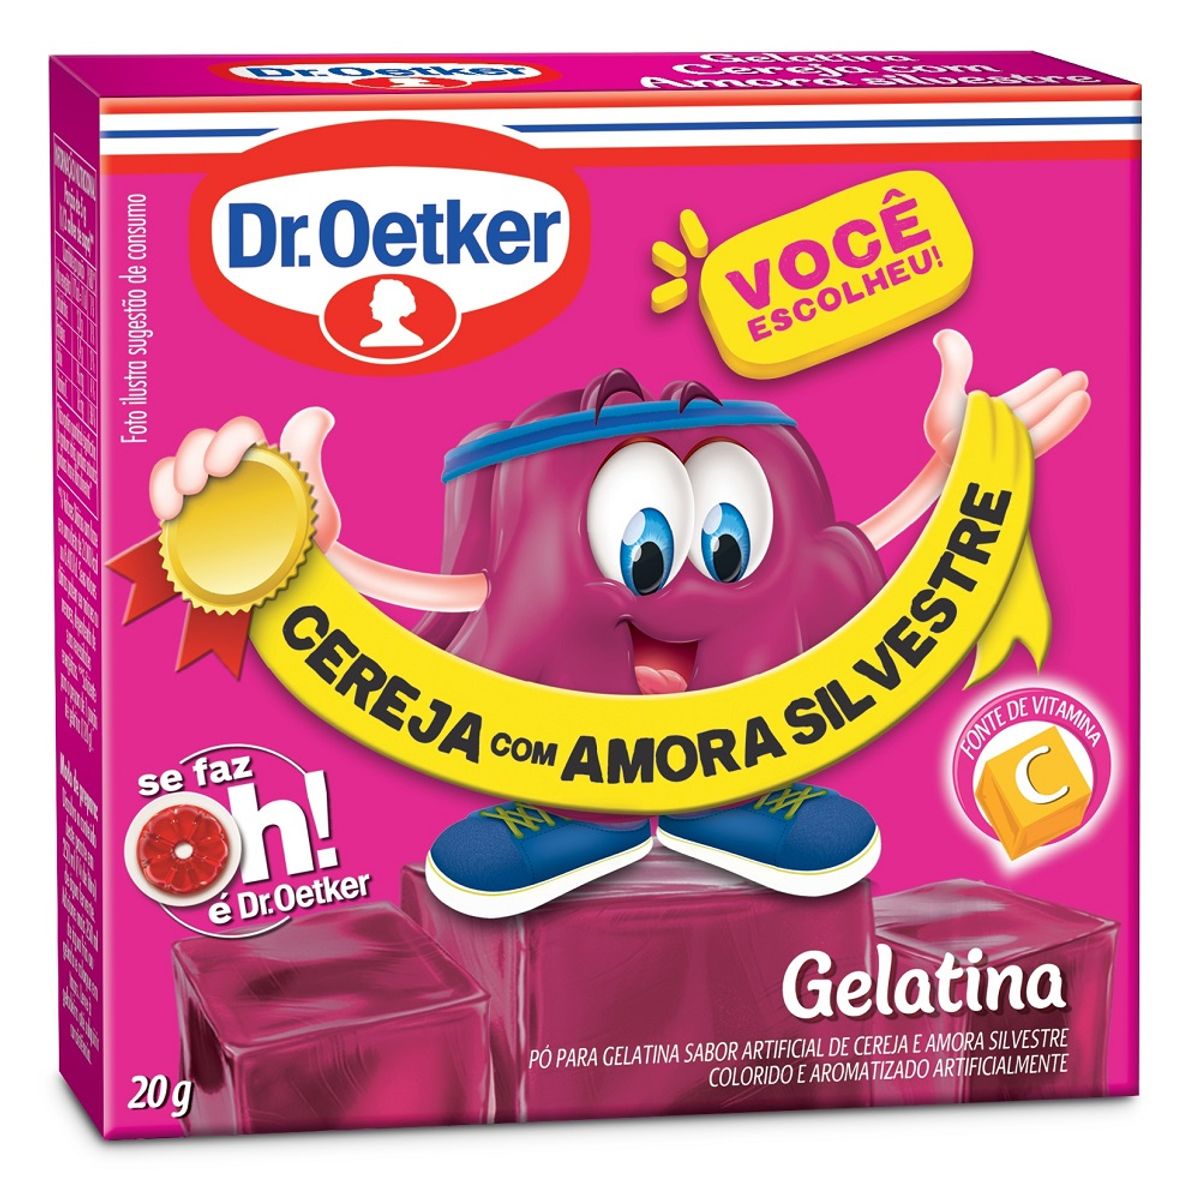 Gelatina em Pó Dr. Oetker Cereja com Amora Silvestre 20g